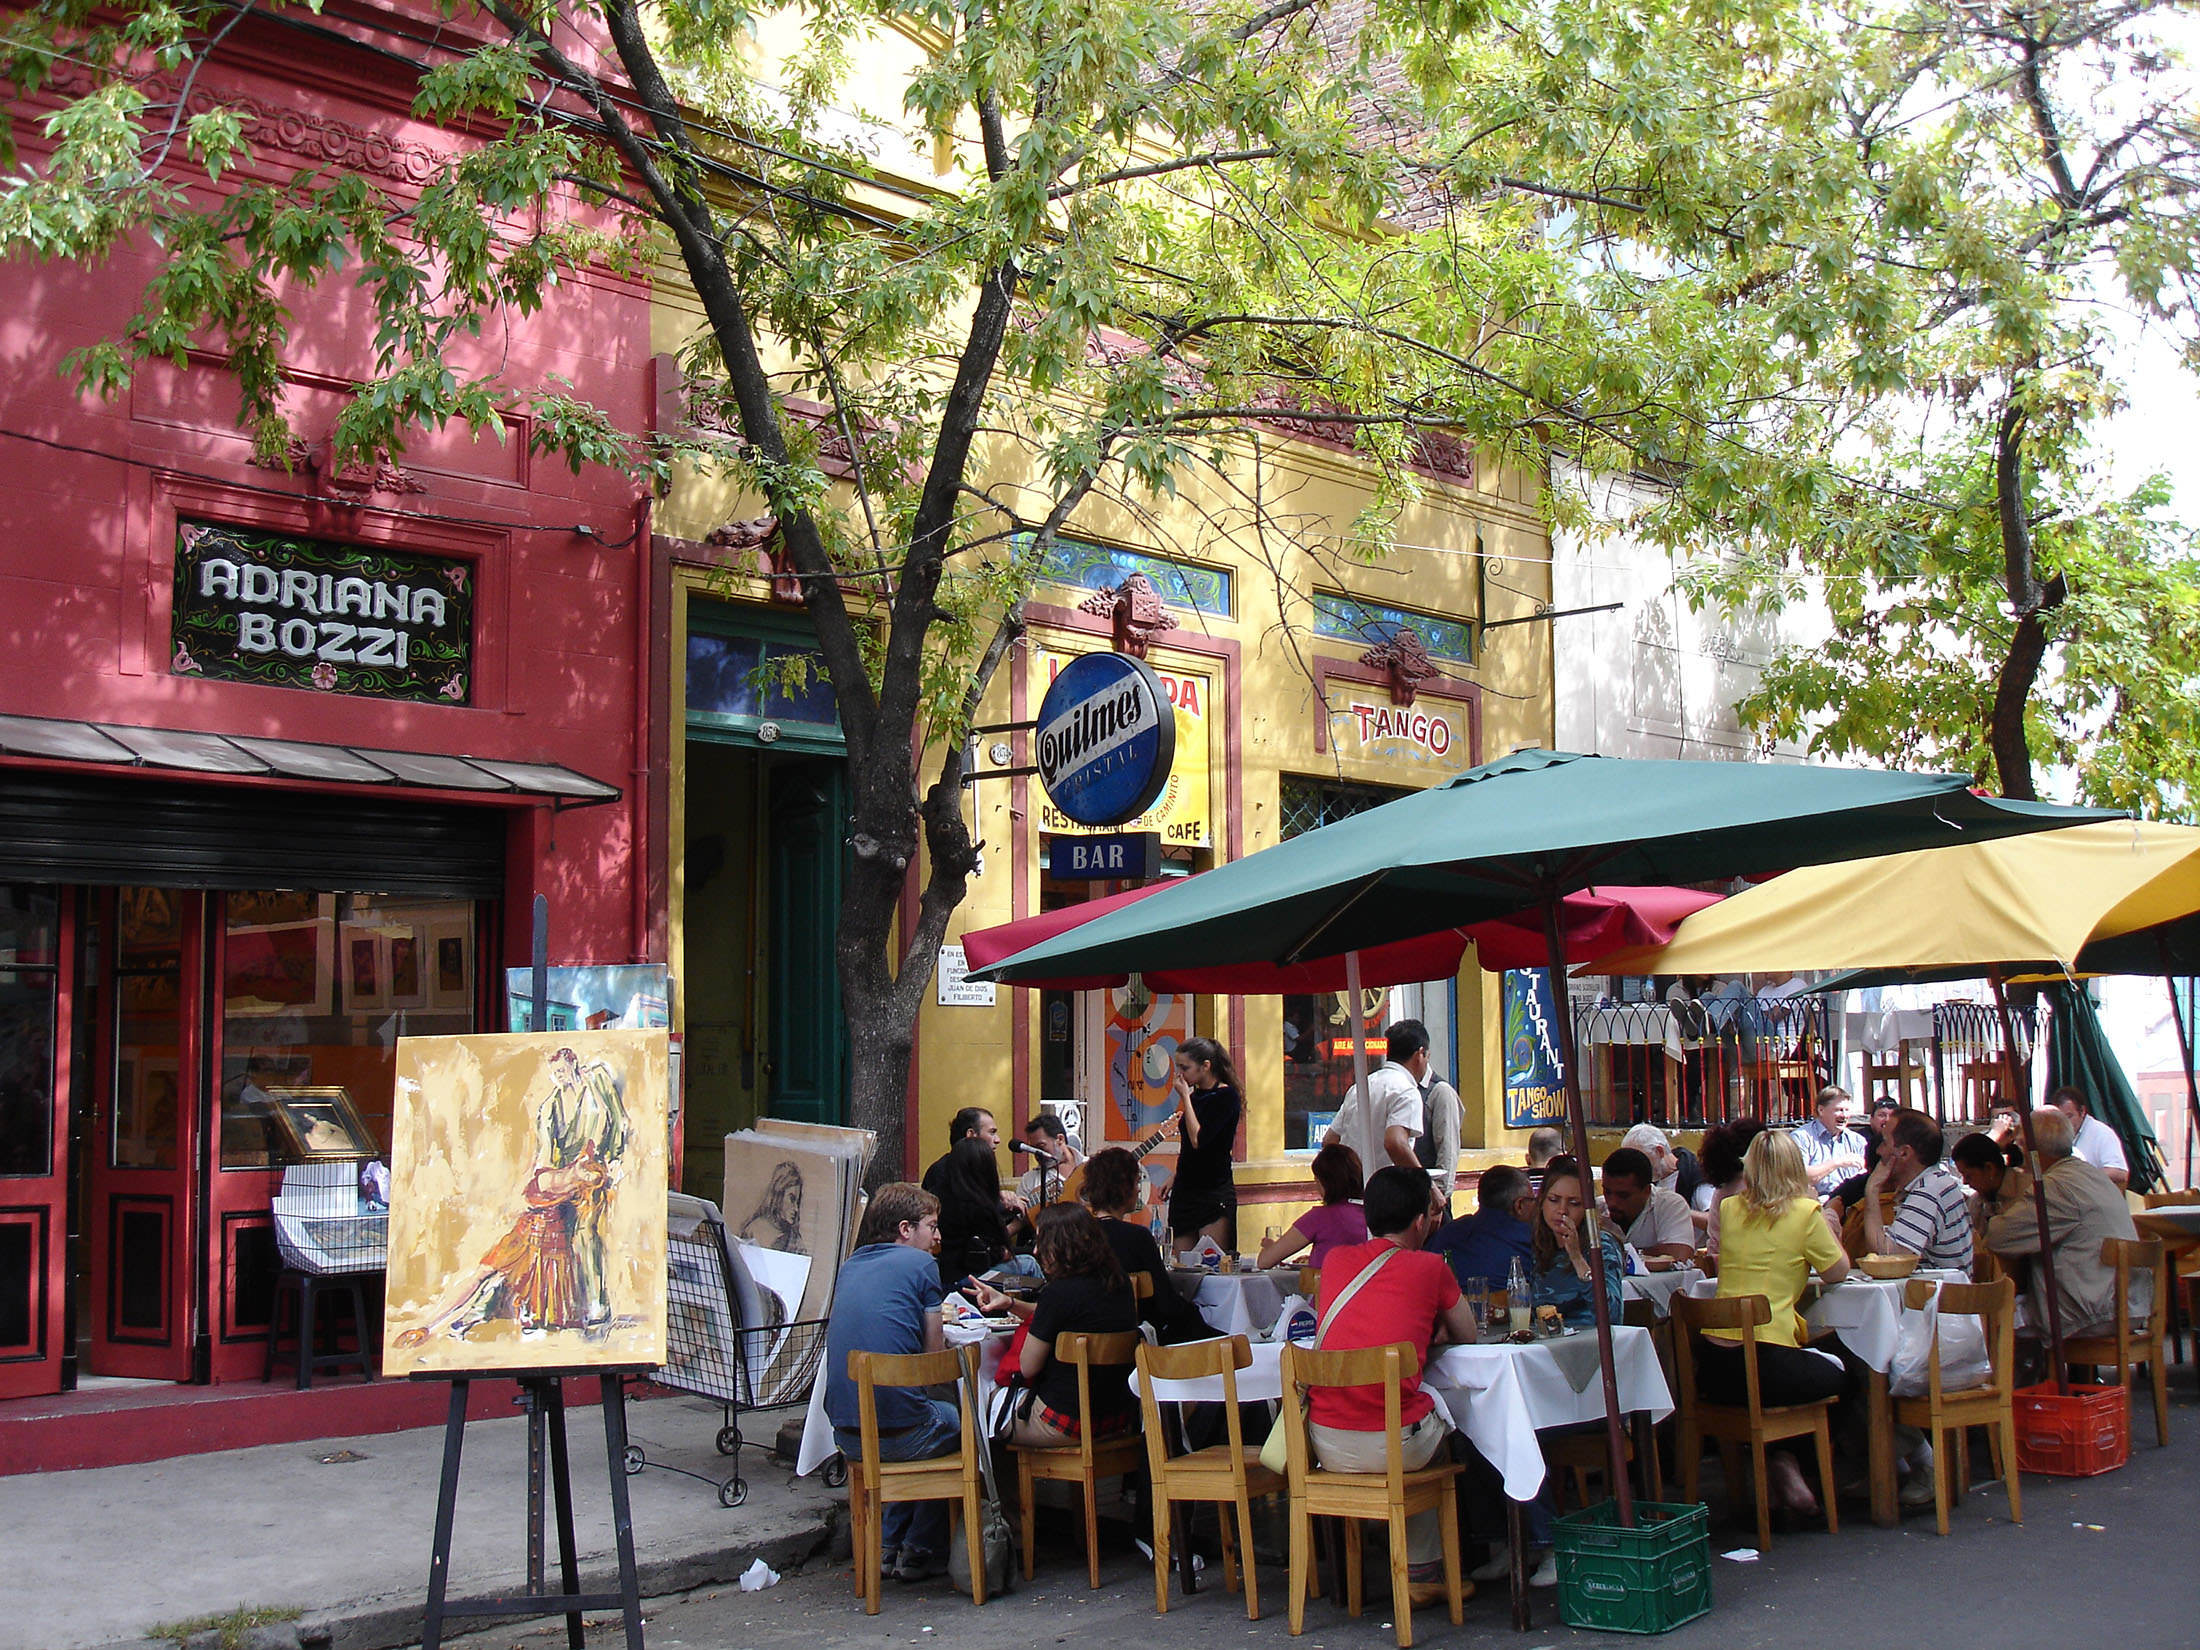 Outdoor dining in La Boca Buenos Aires Argentina